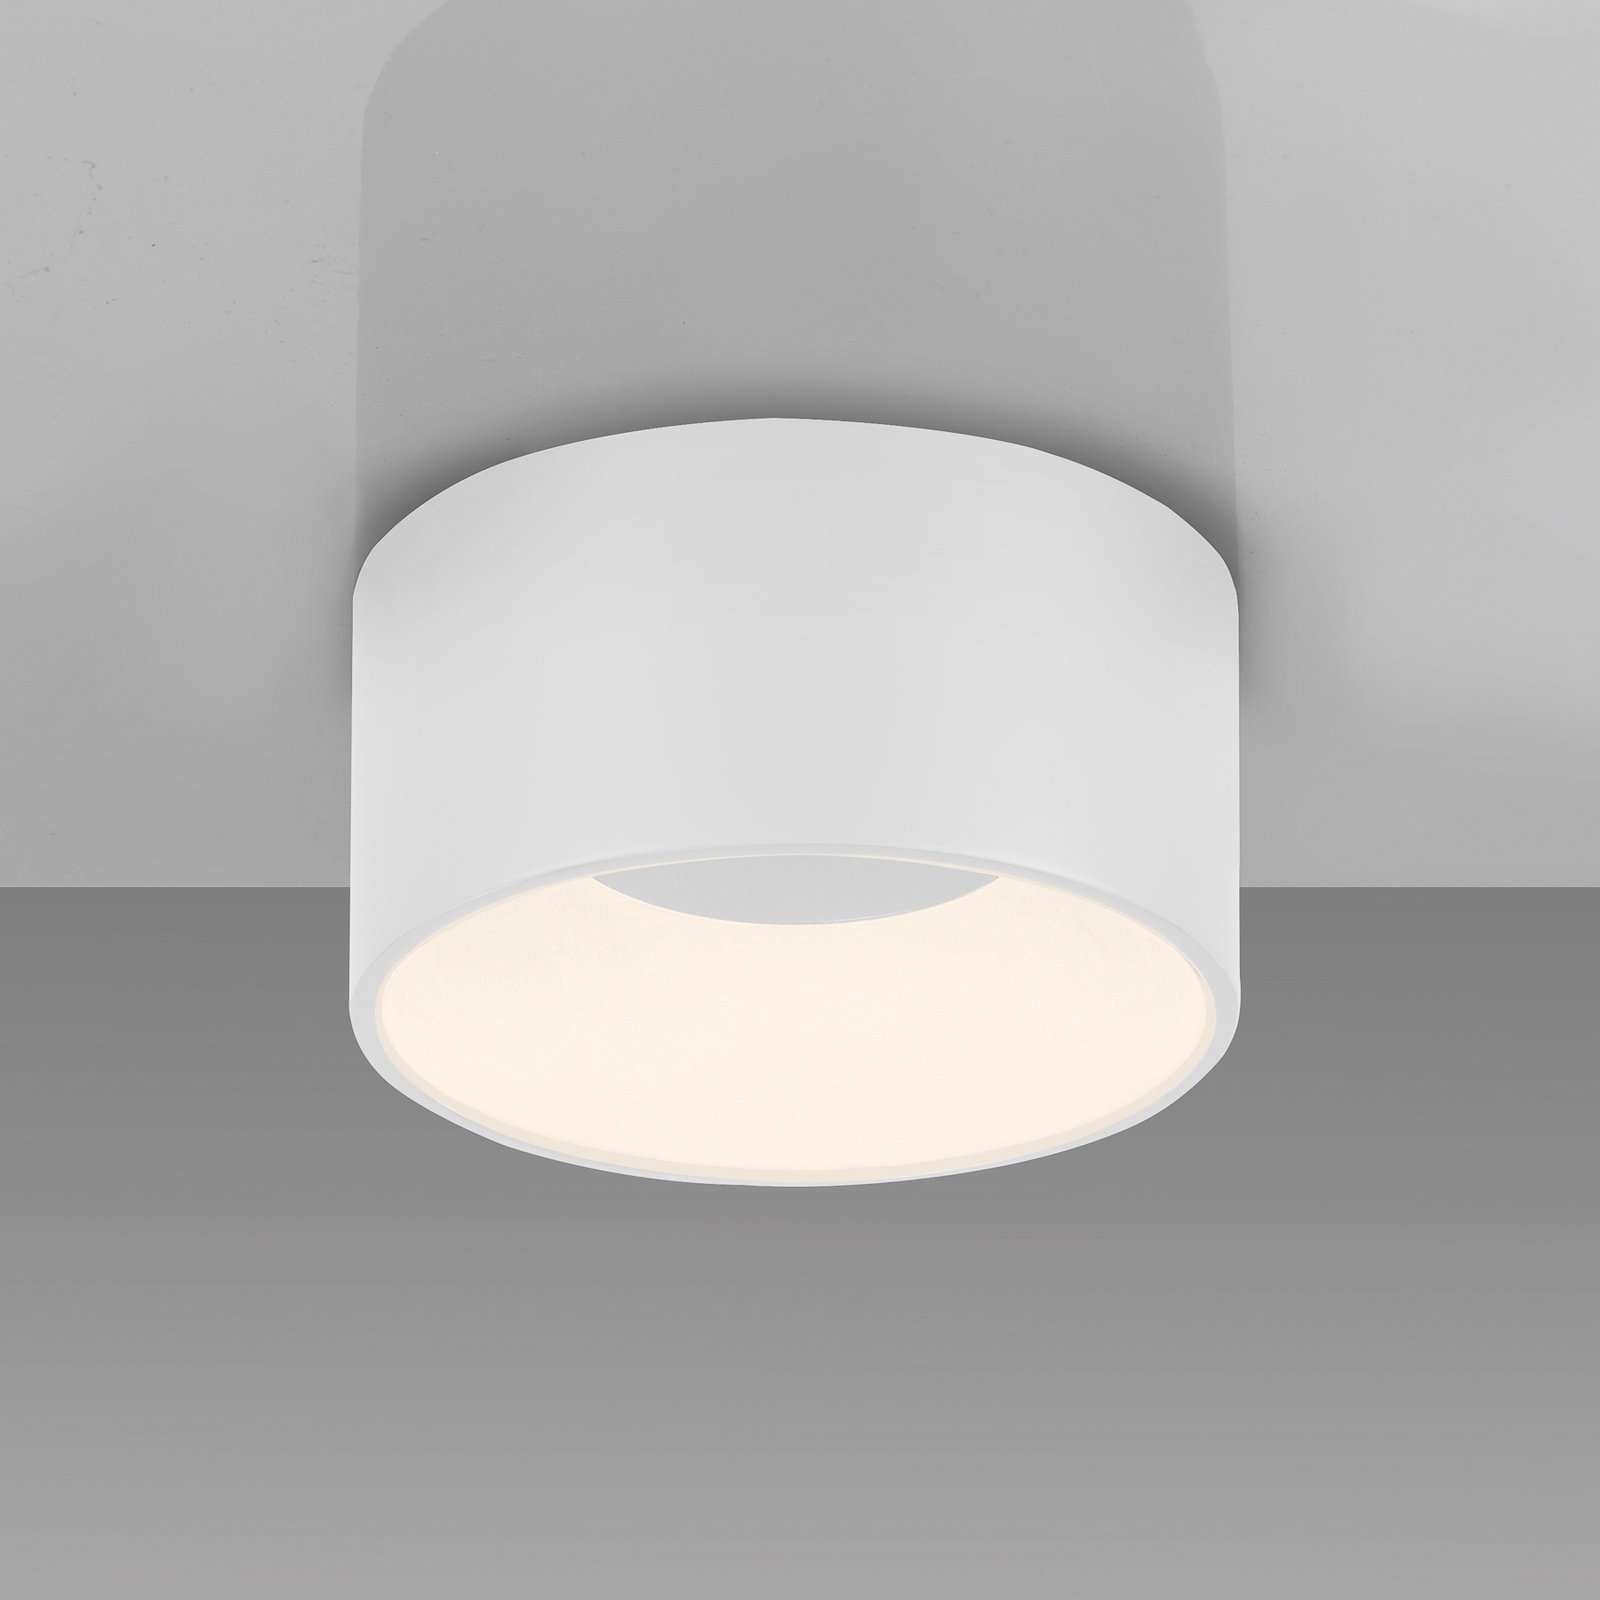 JUST LIGHT. LED-Deckenleuchte Tanika, weiß, Ø 16 cm, dimmbar